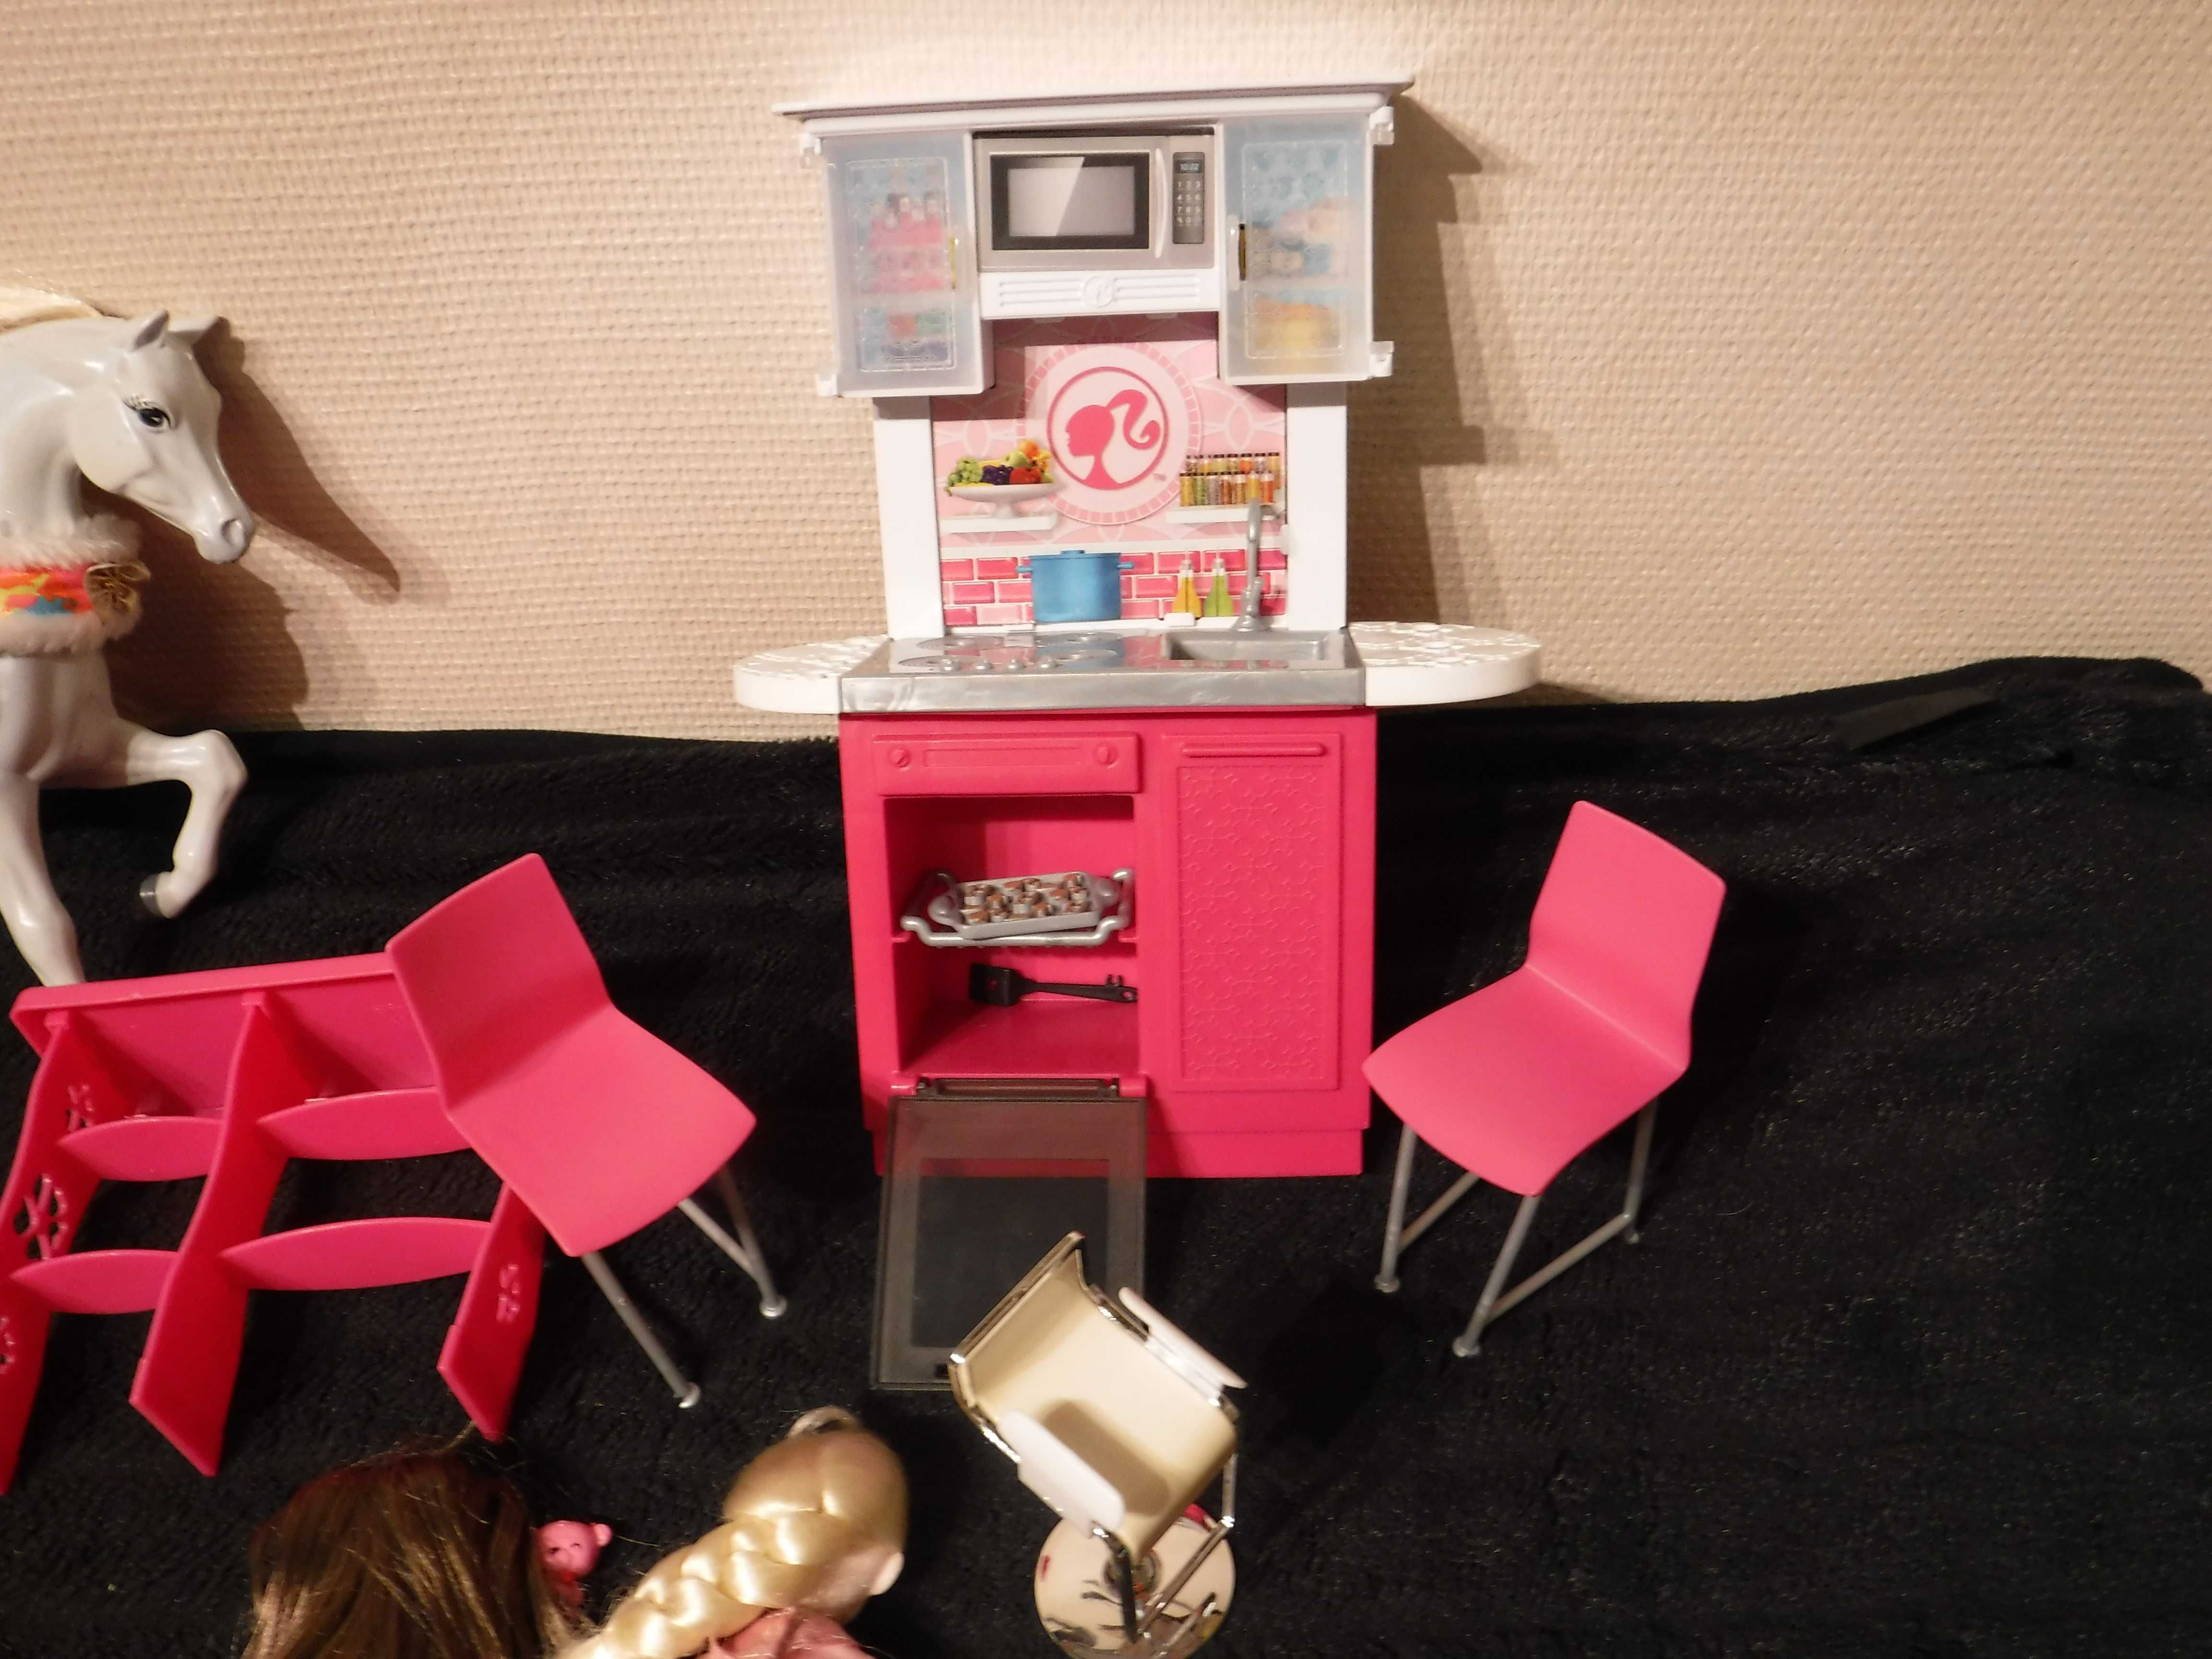 Lalki Barbie z konikiem i kuchnią  < P